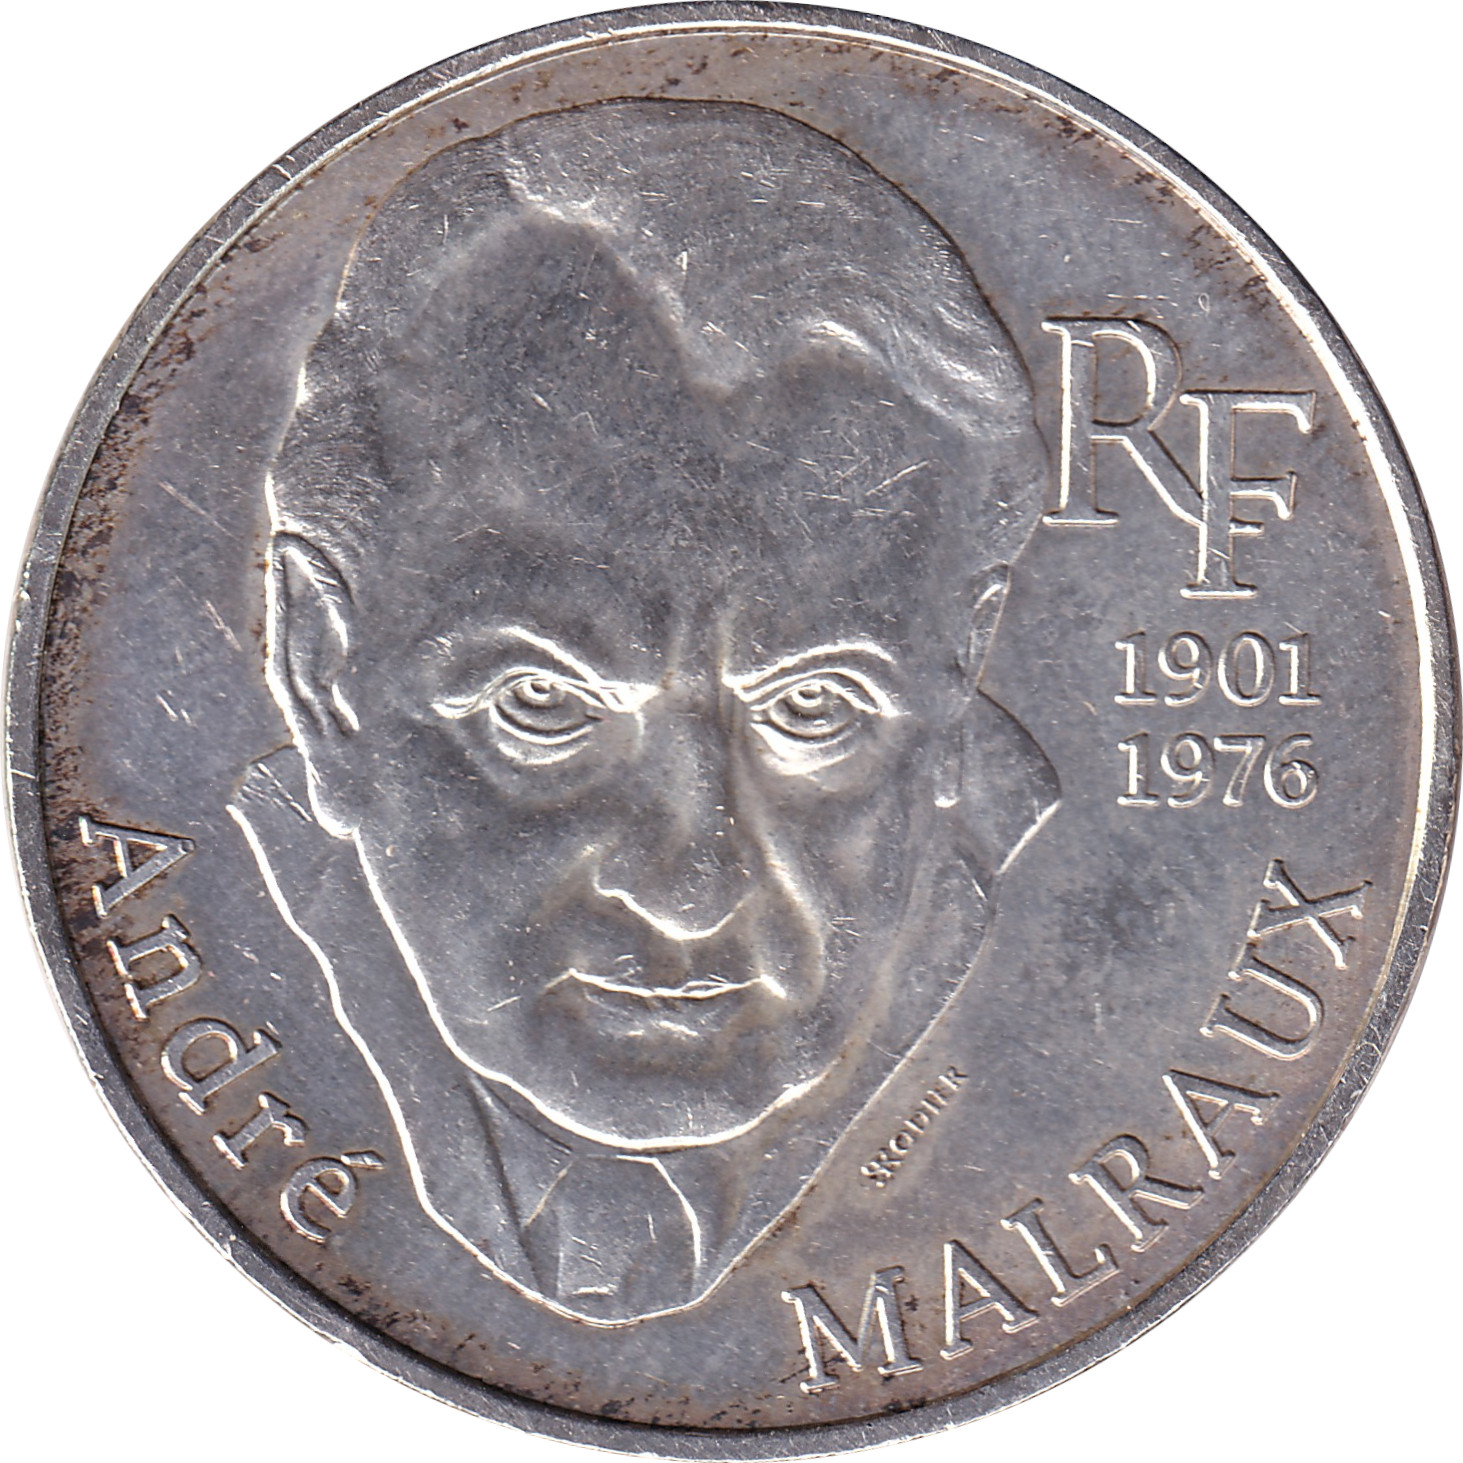 100 francs - André Malraux